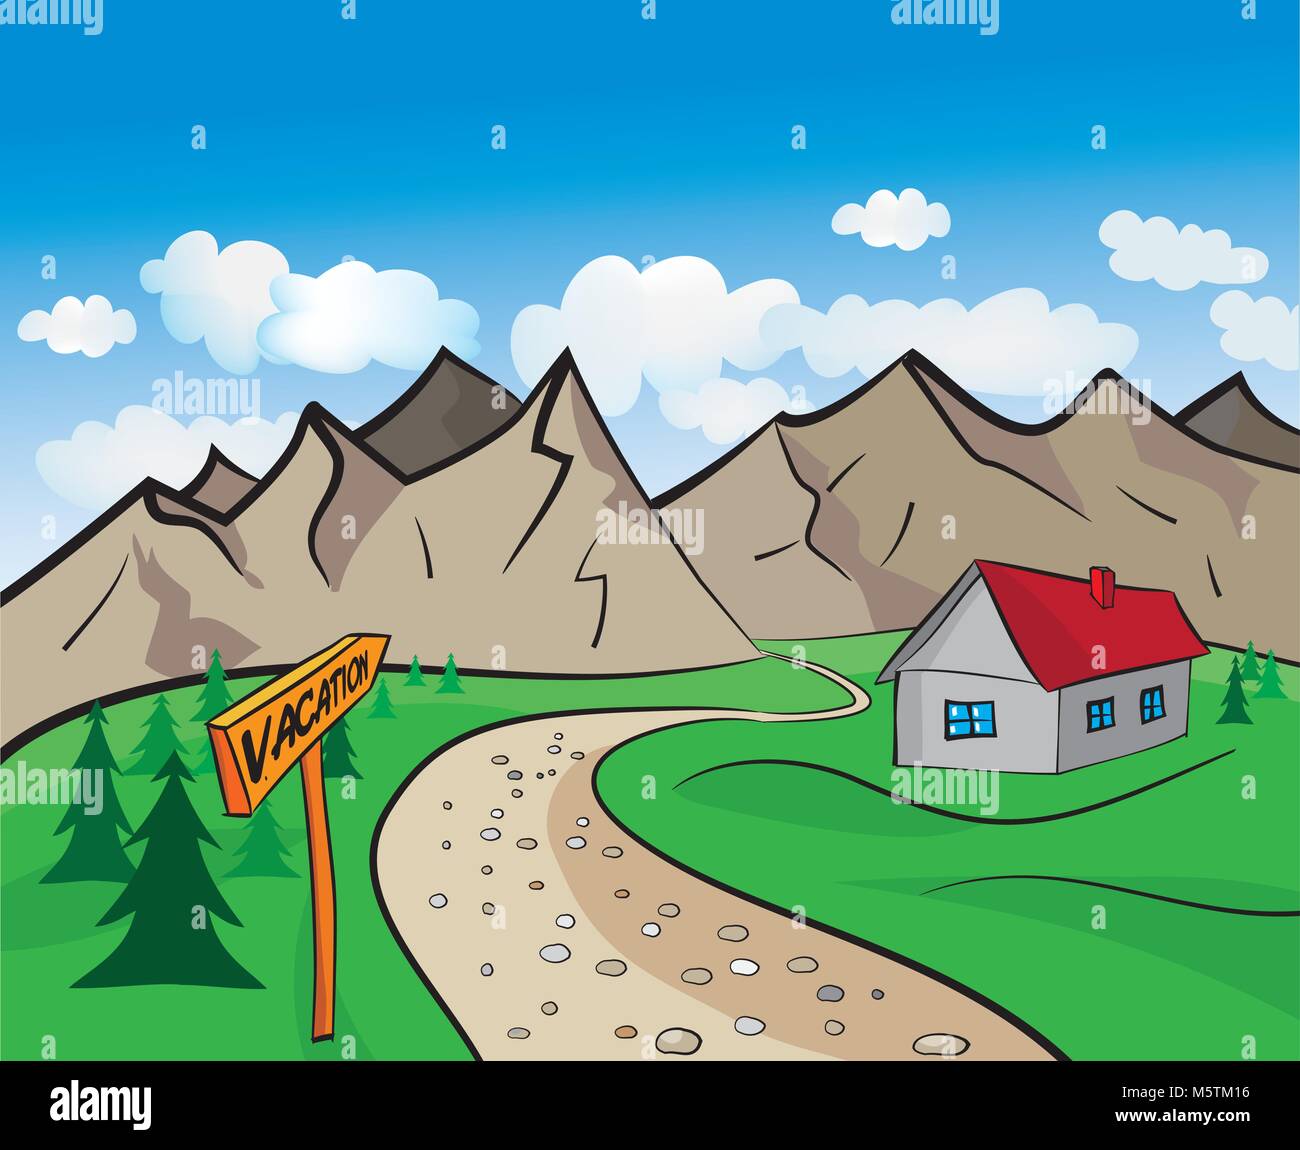 Disegno Del Paesaggio Di Montagna Con La Casa Di Insulto Immagine E Vettoriale Alamy